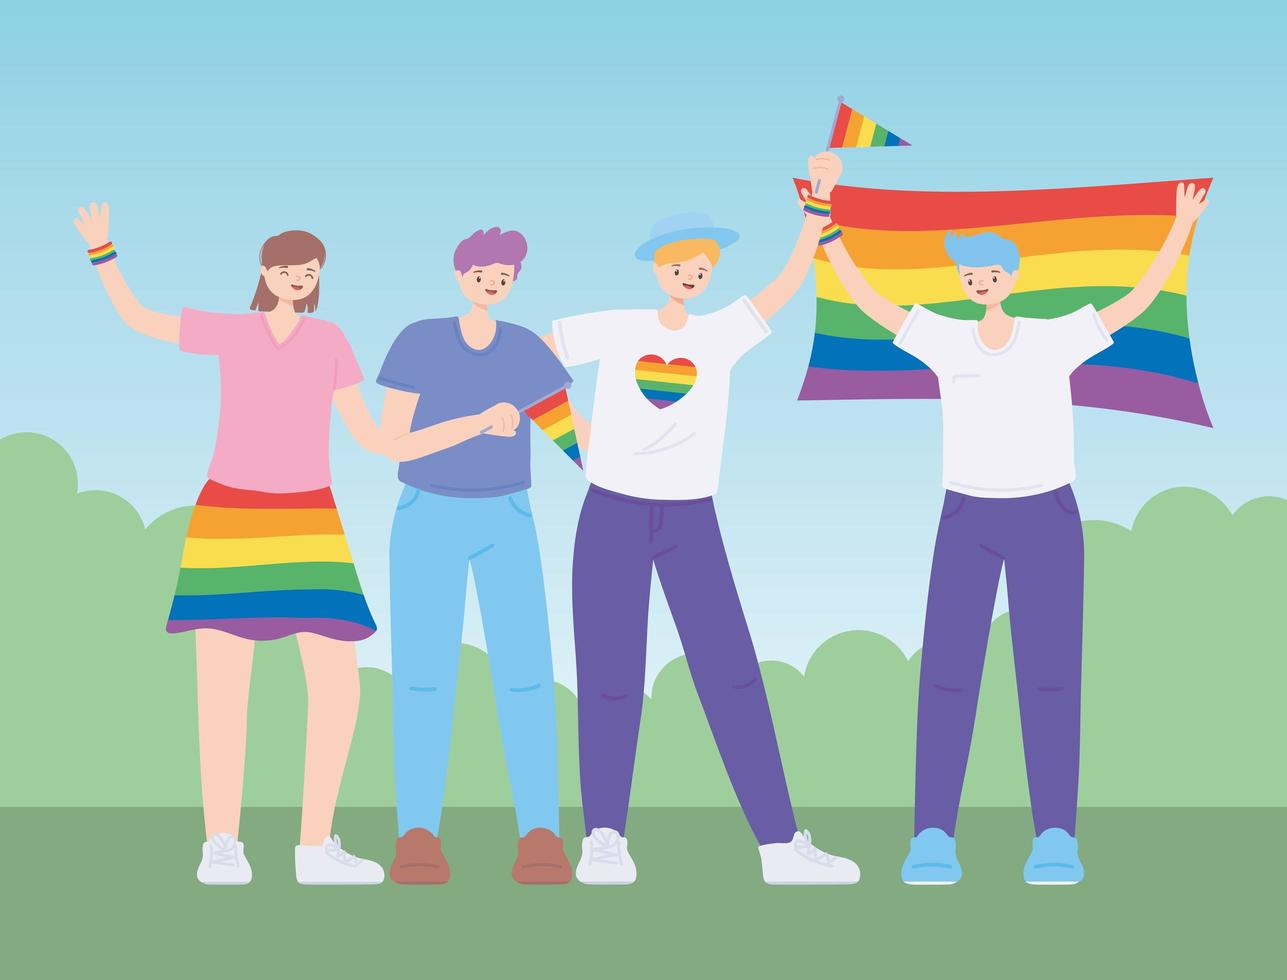 lgbtq-gemeenschap, mensen knuffelen met een regenboogvlag, homoparade protest tegen seksuele discriminatie vector